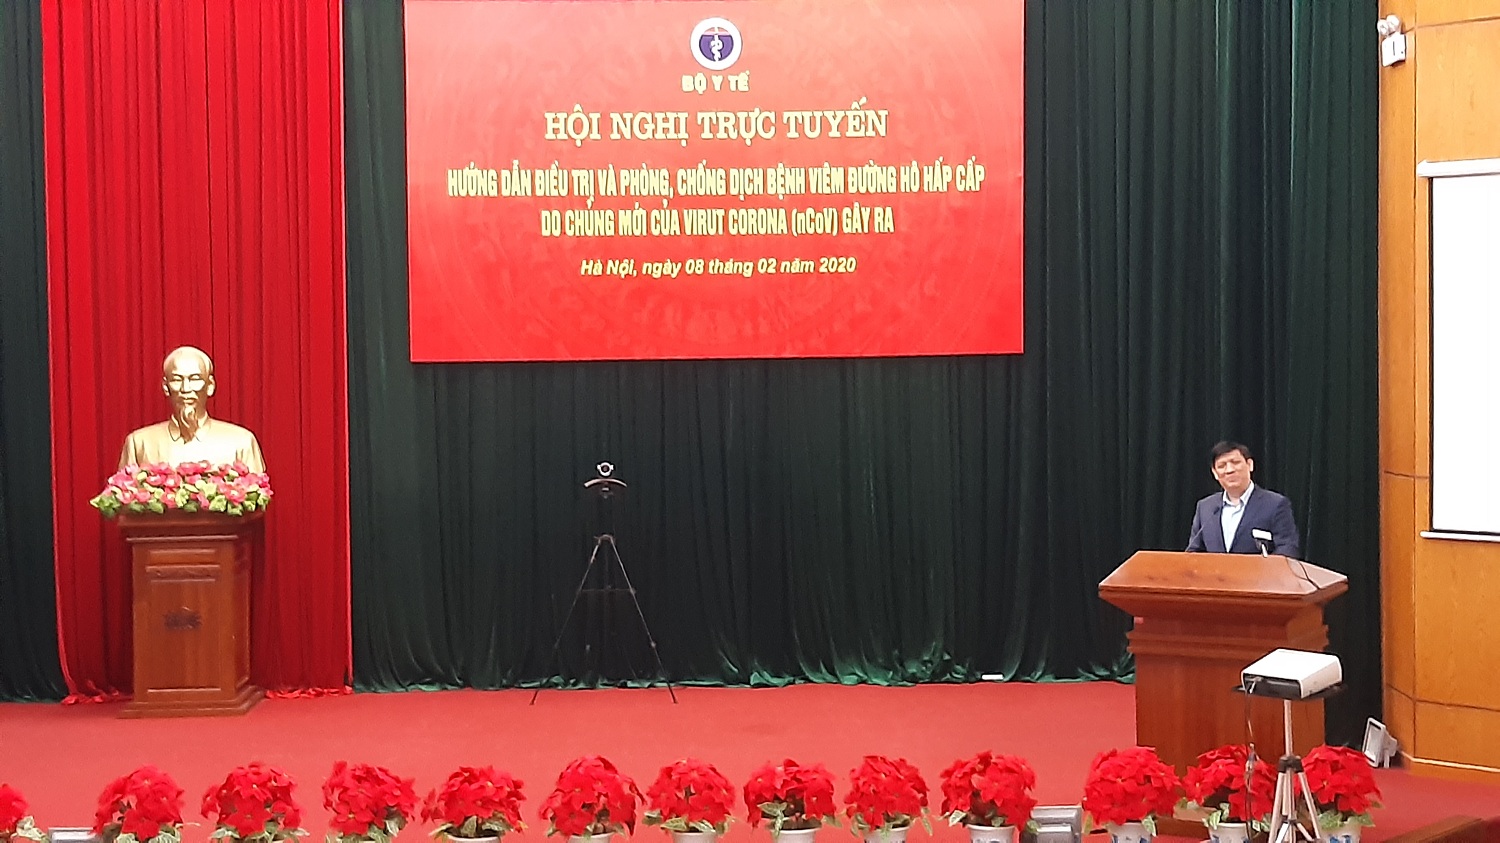 Thứ trưởng Bộ Y tế Nguyễn Thanh Long phát biểu tại Hội nghị trực tuyến hướng dẫn điều trị và phòng chống dịch bệnh viêm đường hô hấp cấp do chủng mới của vi rút Corona (nCOV) tại điểm cầu Trung ương (Thùy Vy)